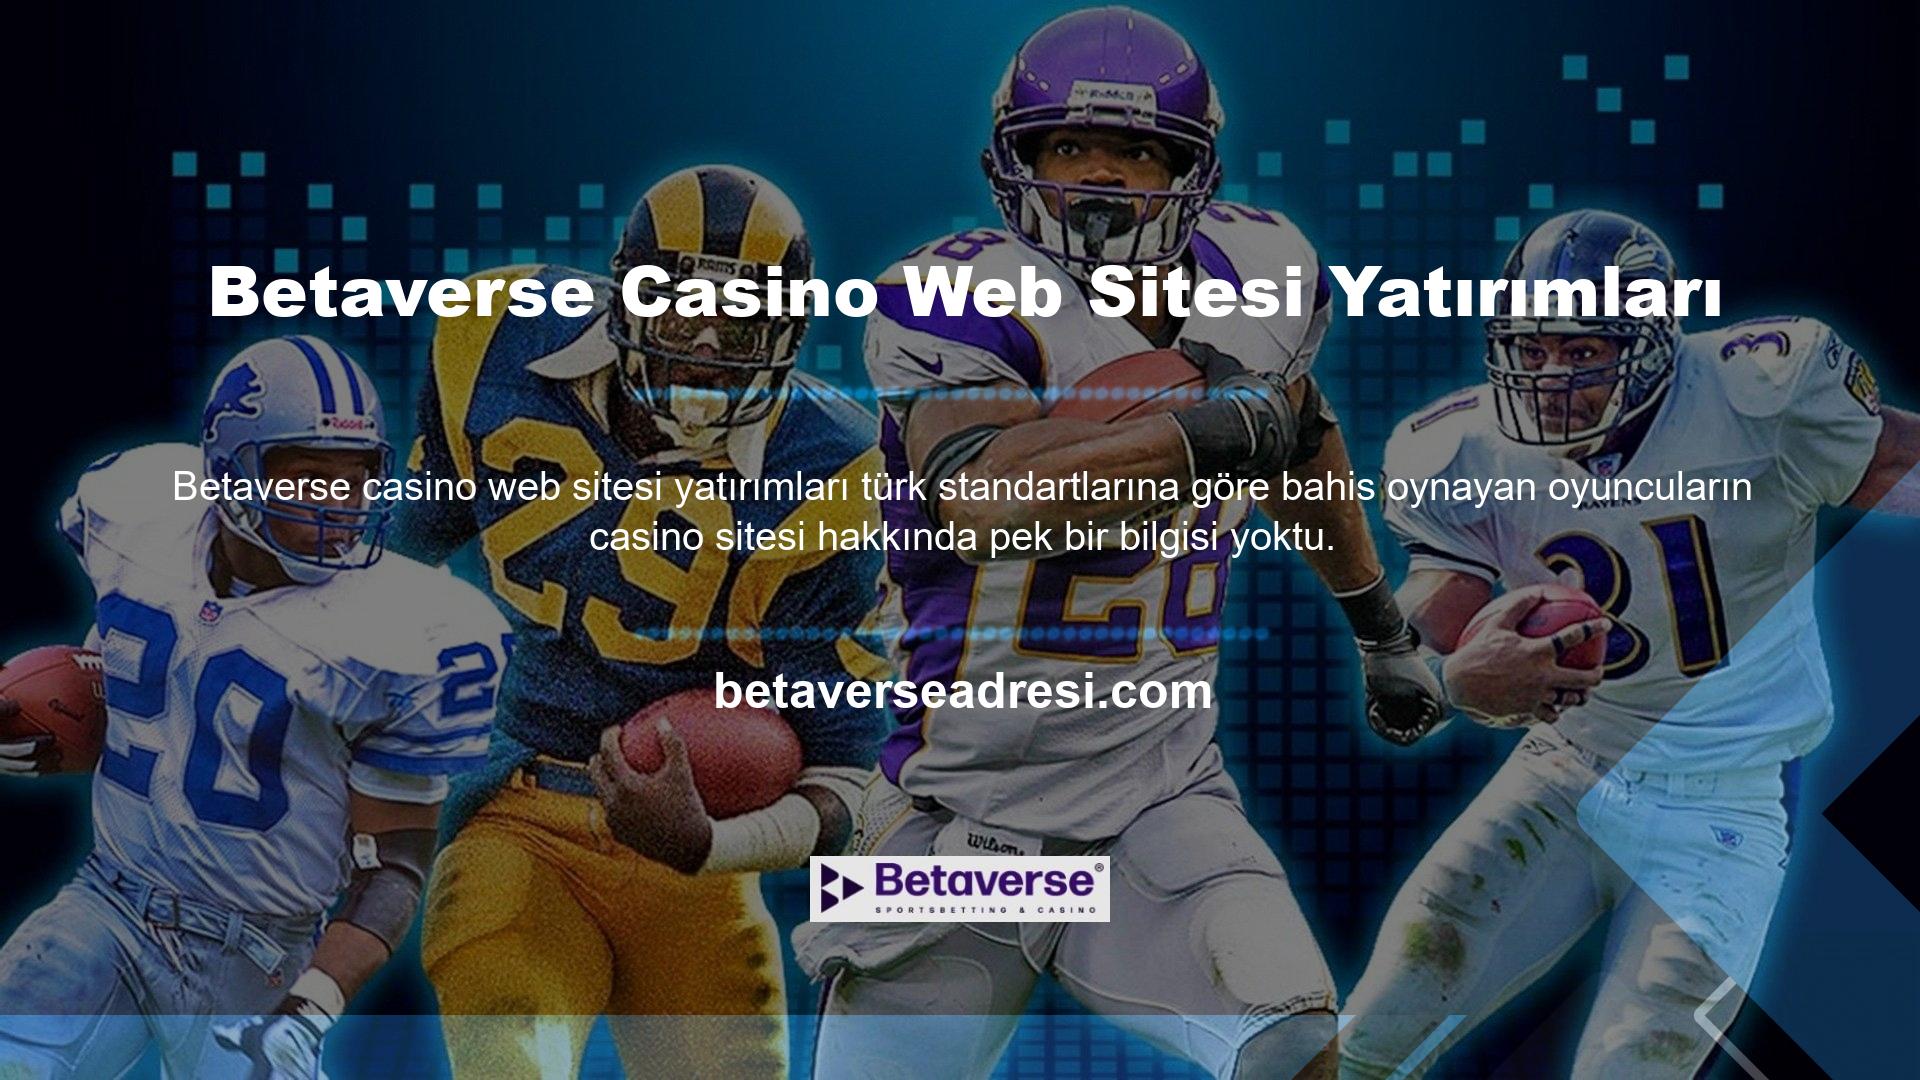 Bu arada Betaverse Harcama Casino web sitesi gibi gerçek zamanlı bahis siteleri, Türk bahisçilerin futbol ve basketbolla olan ilişkisini fark ederek böyle bir bahis platformuna olan ihtiyacı fark etti